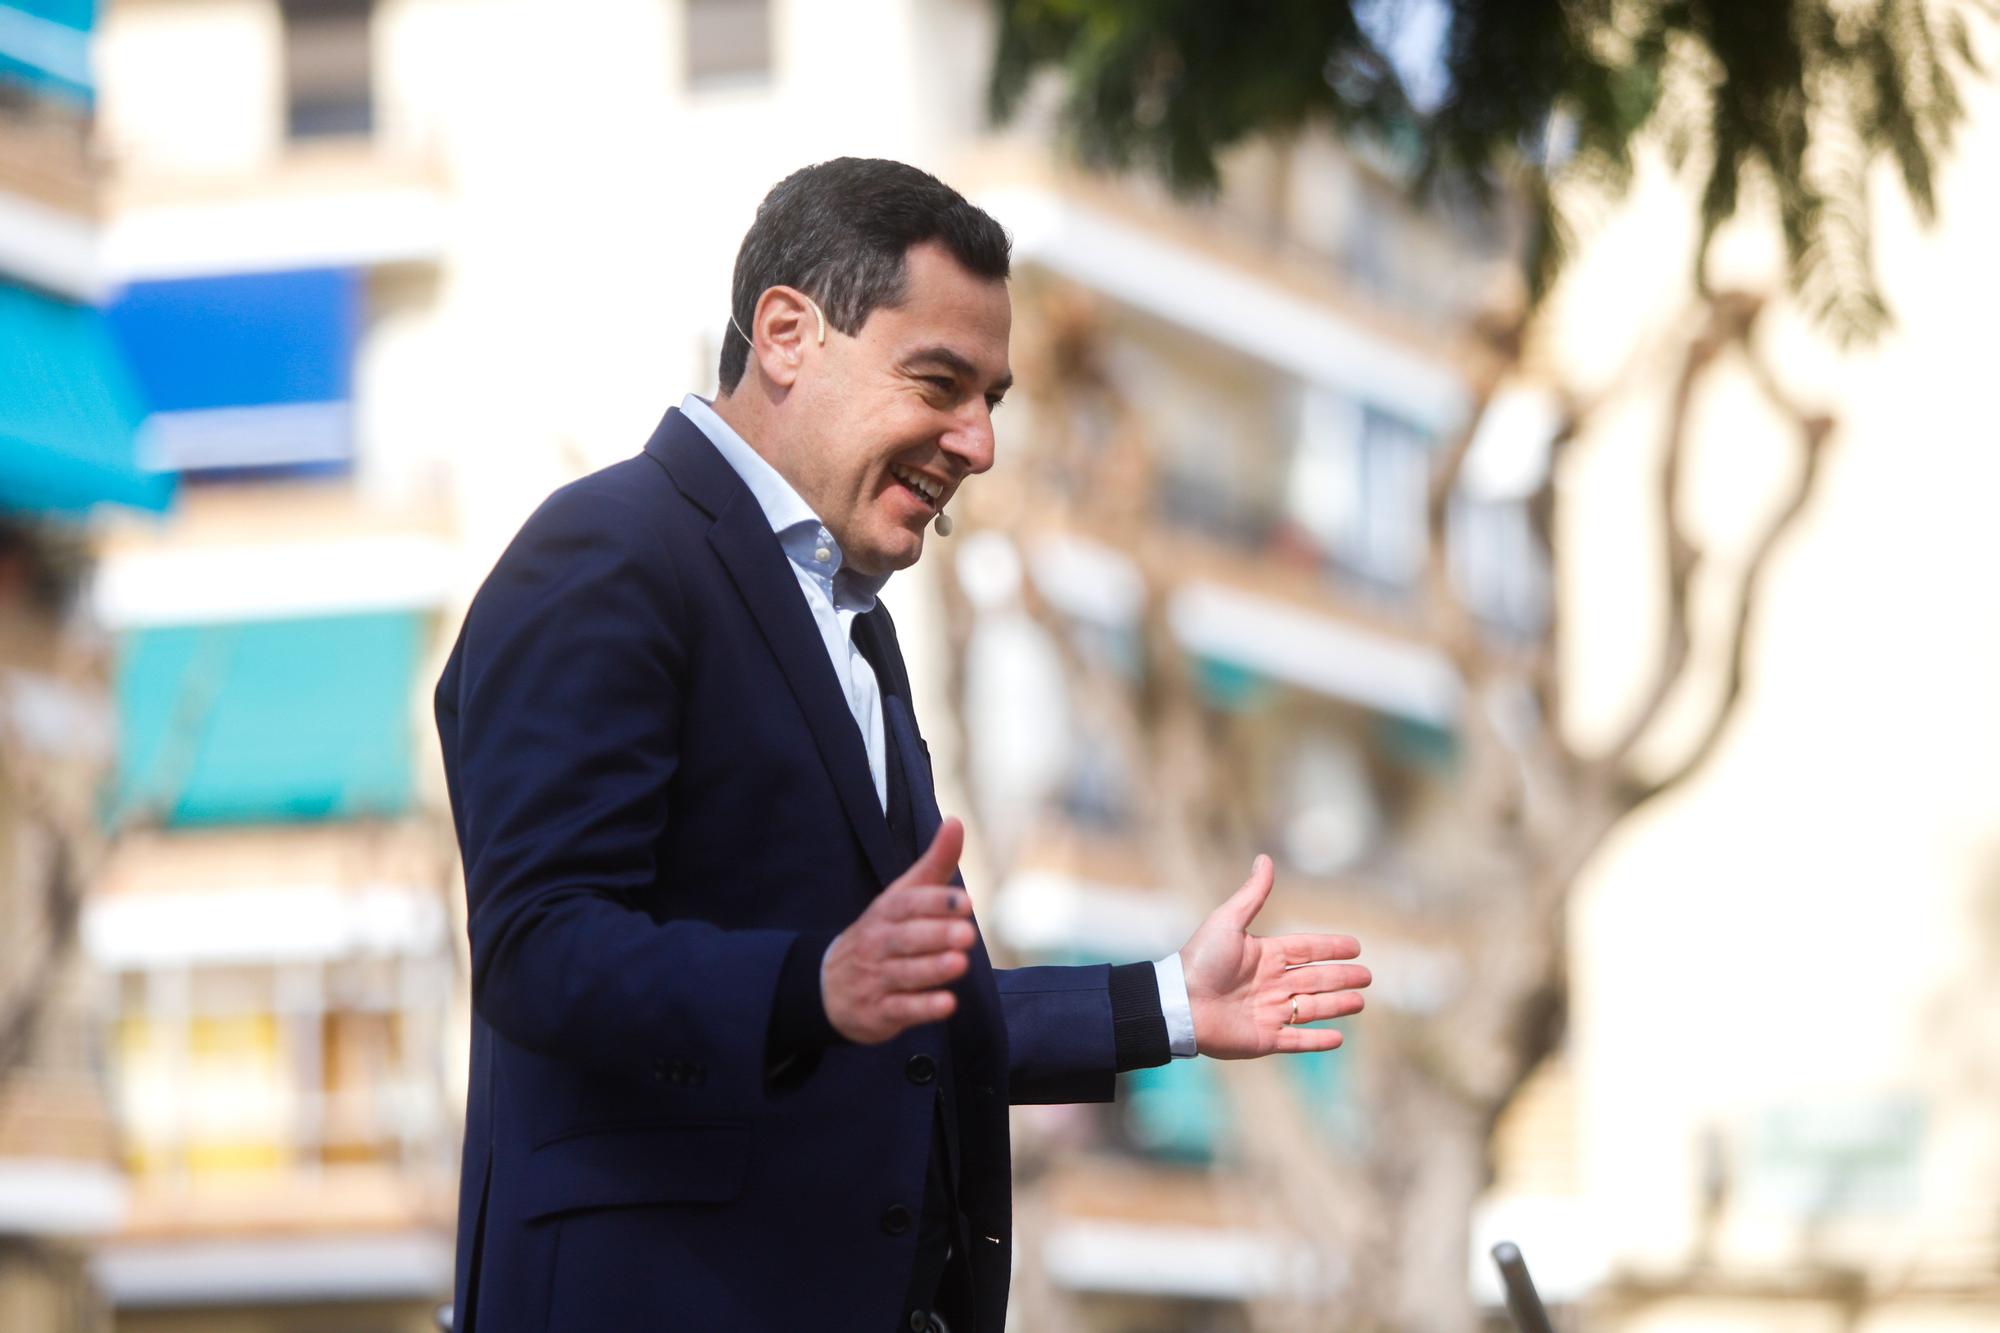 Mitin del PP en Alfafar con el presidente de Andalucía, Juanma Moreno